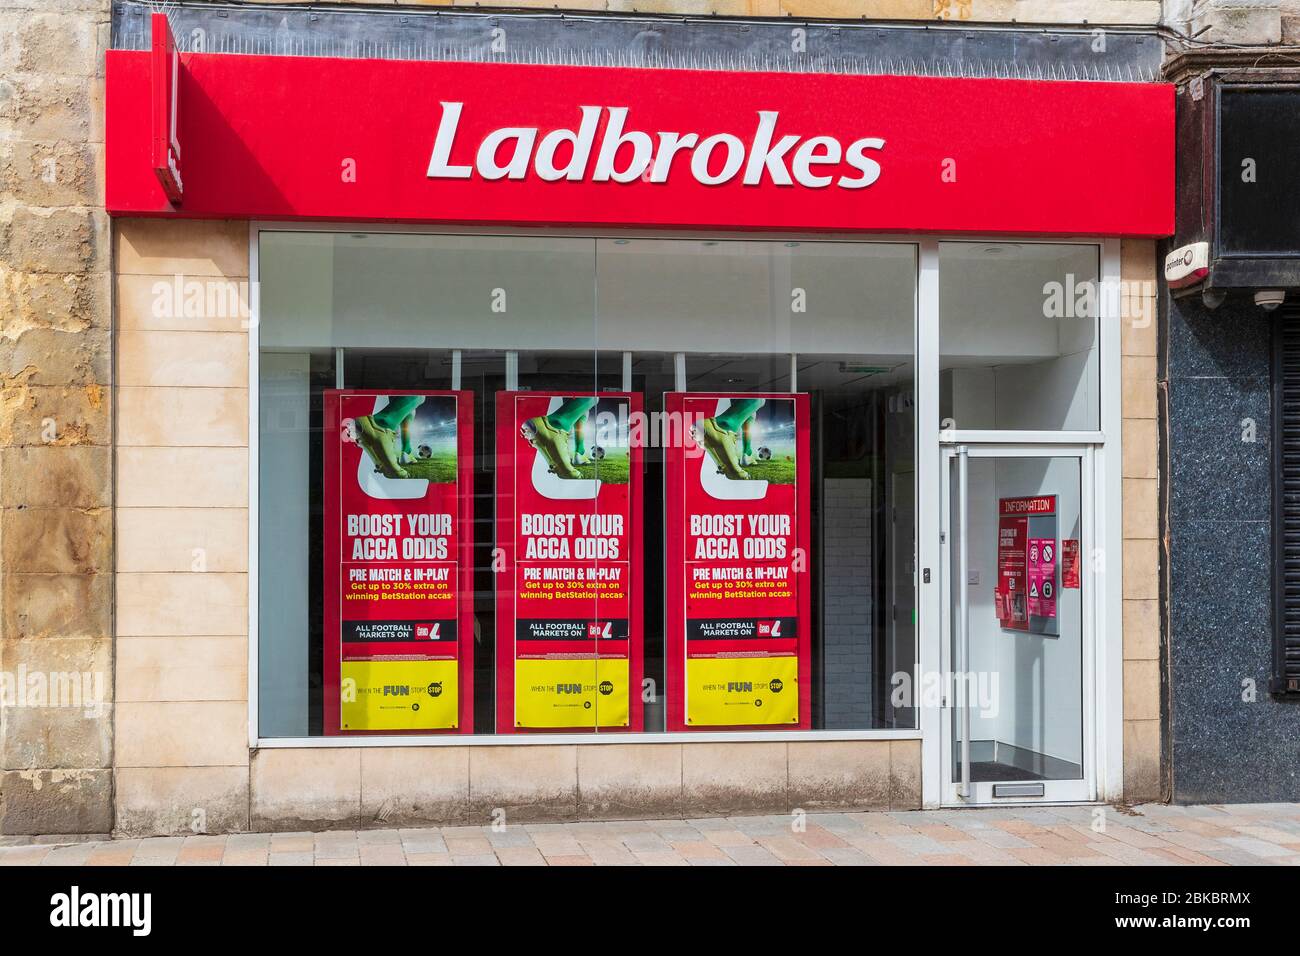 Boutique de Paris pour les bookmakers Ladbrookes, Kilwinning, Royaume-Uni Banque D'Images